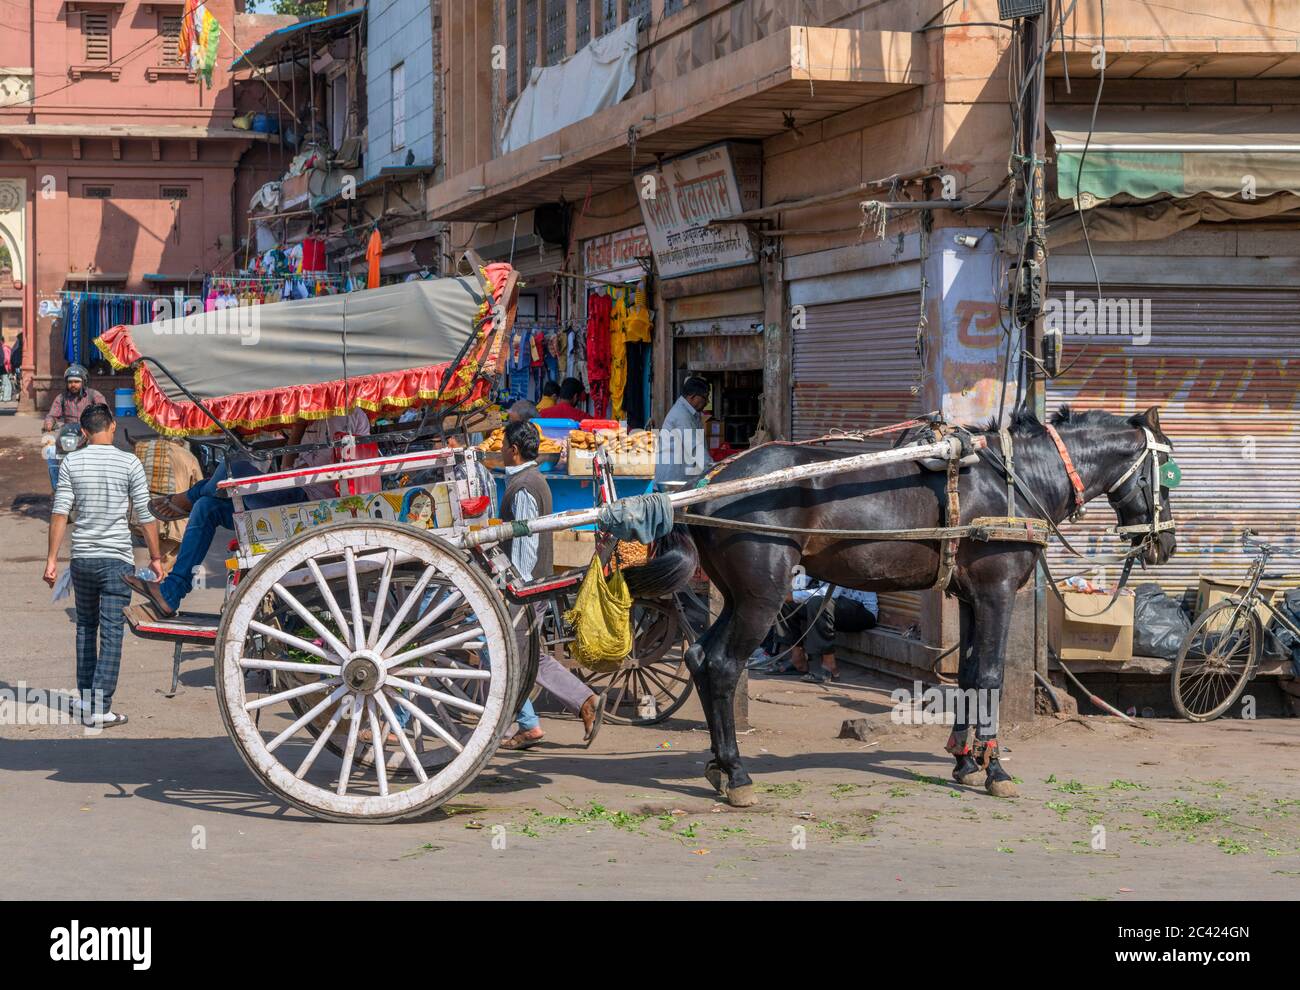 Caballo y carrito en Nai Sarak, una calle muy transitada en el centro de la ciudad cerca del mercado de Sardar, Jodhpur, Rajasthan, India Foto de stock